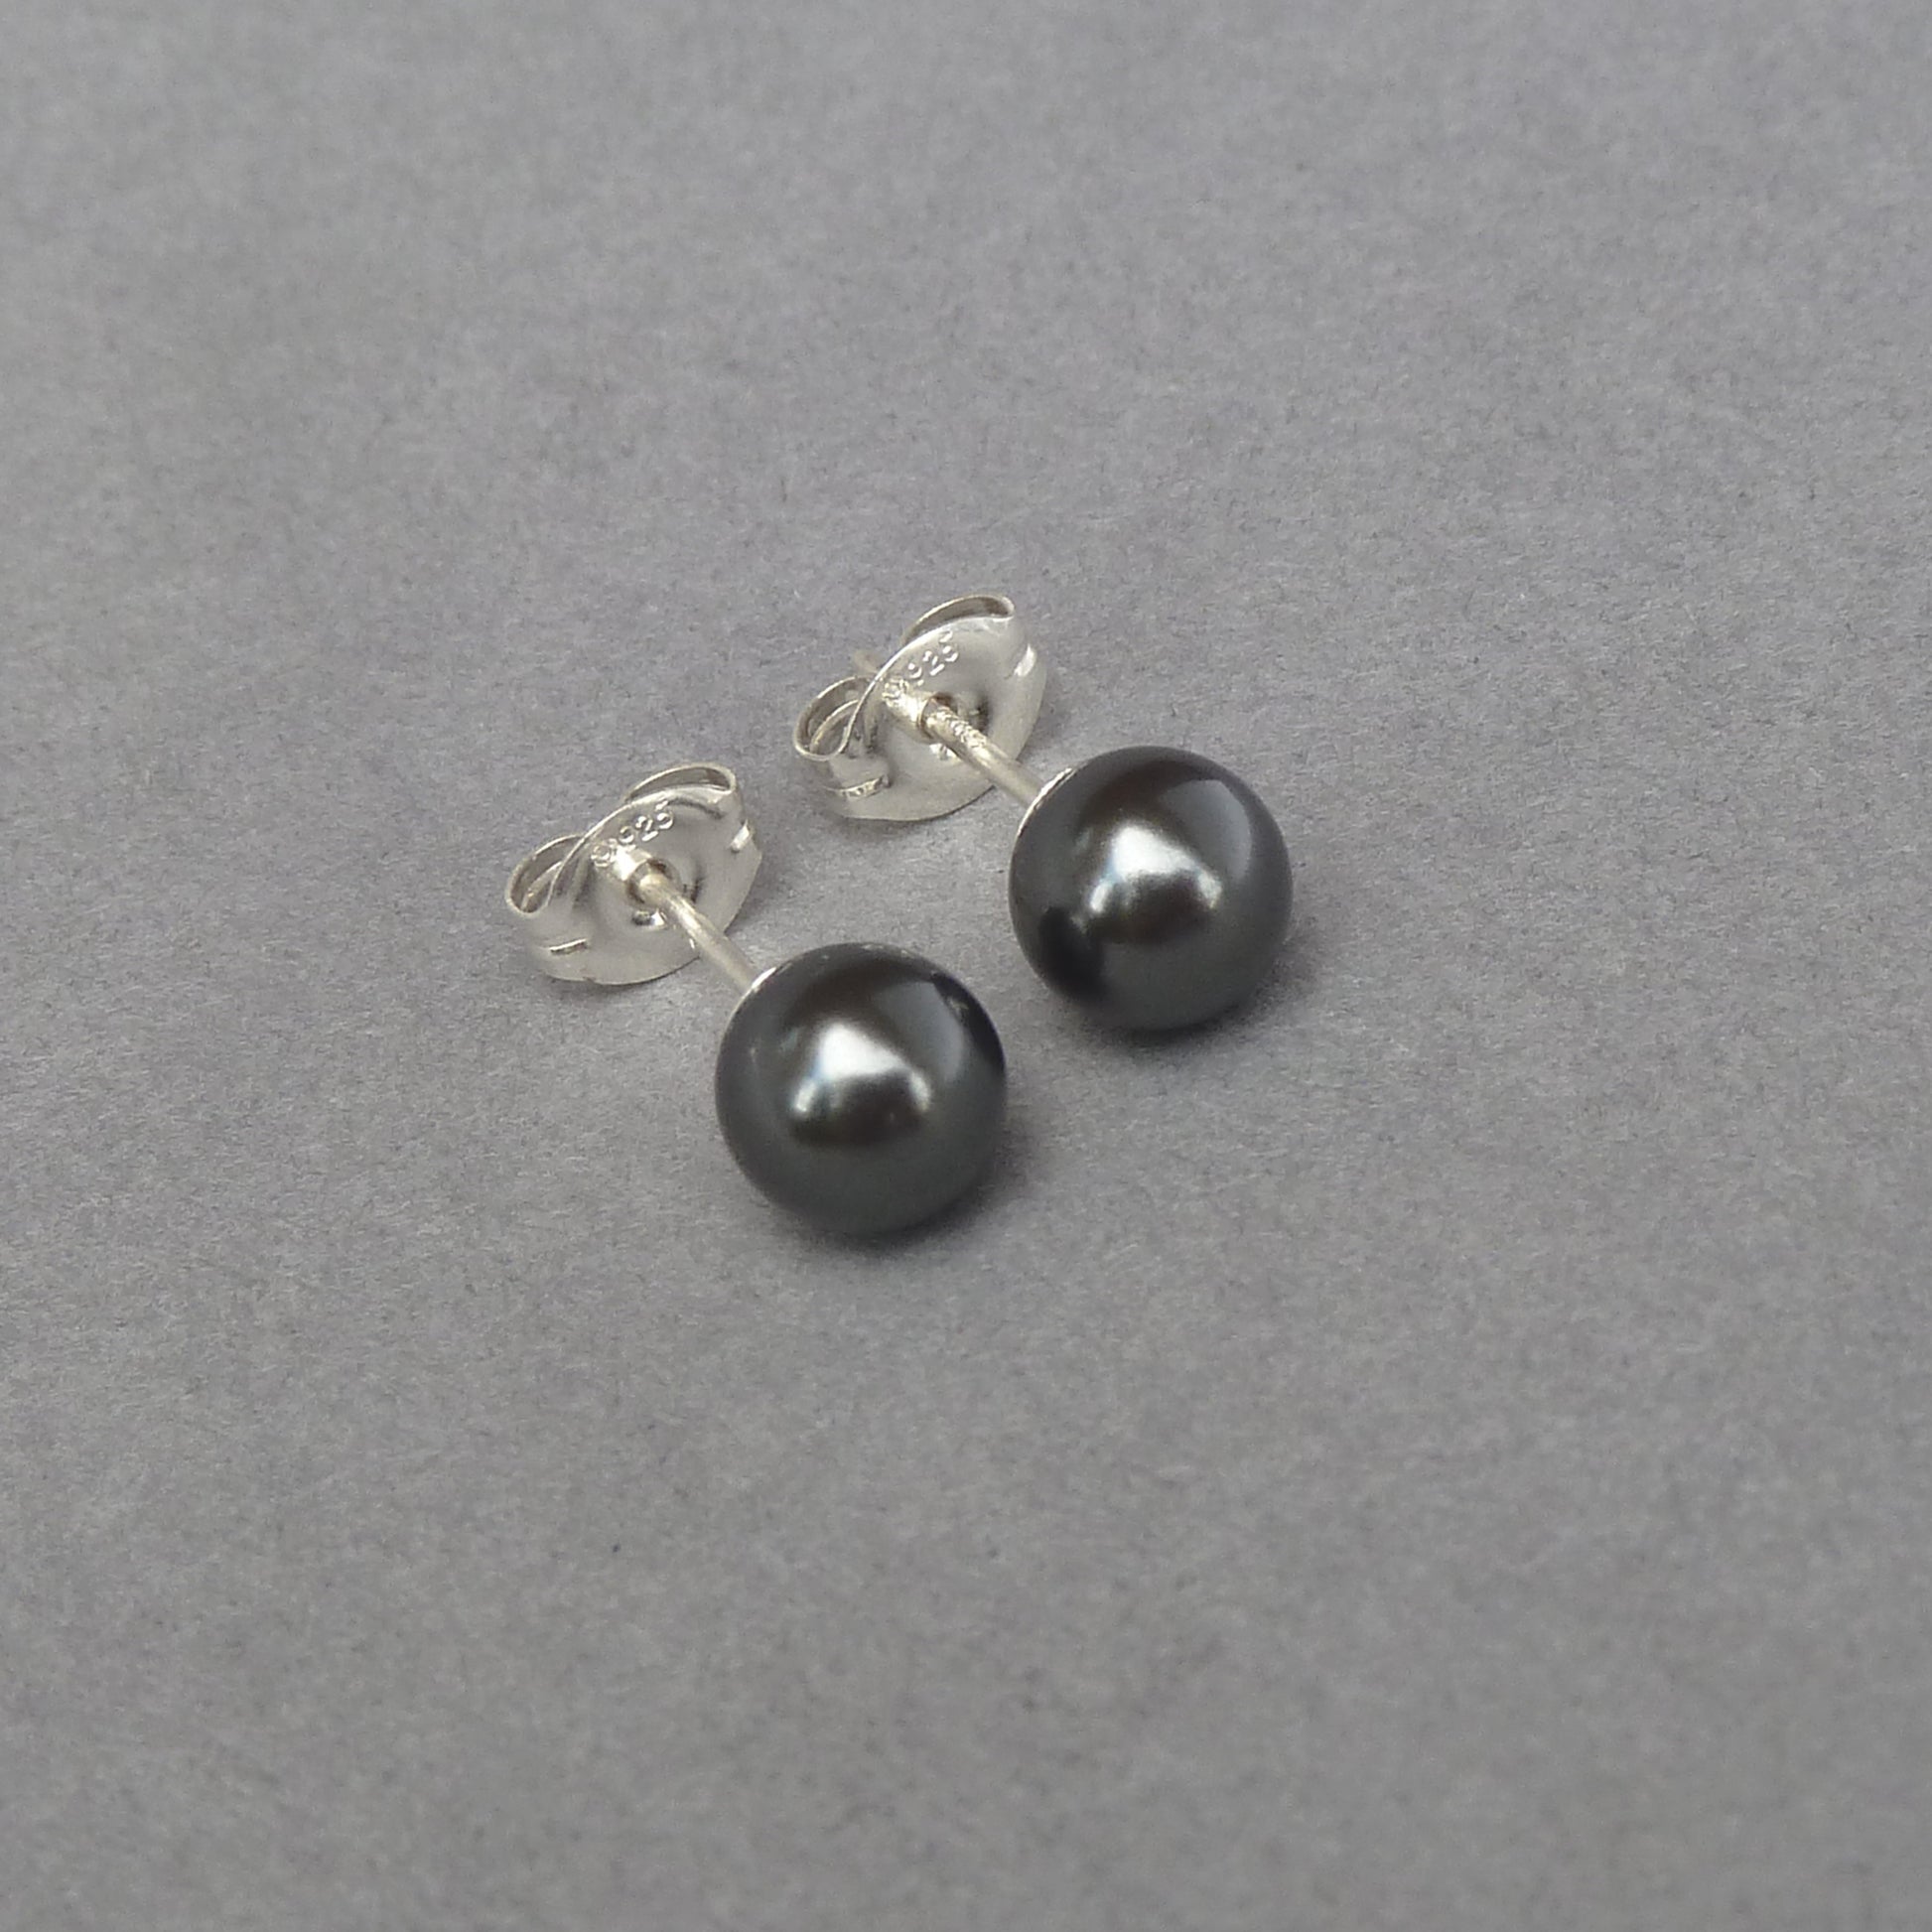 Small black pearl studs